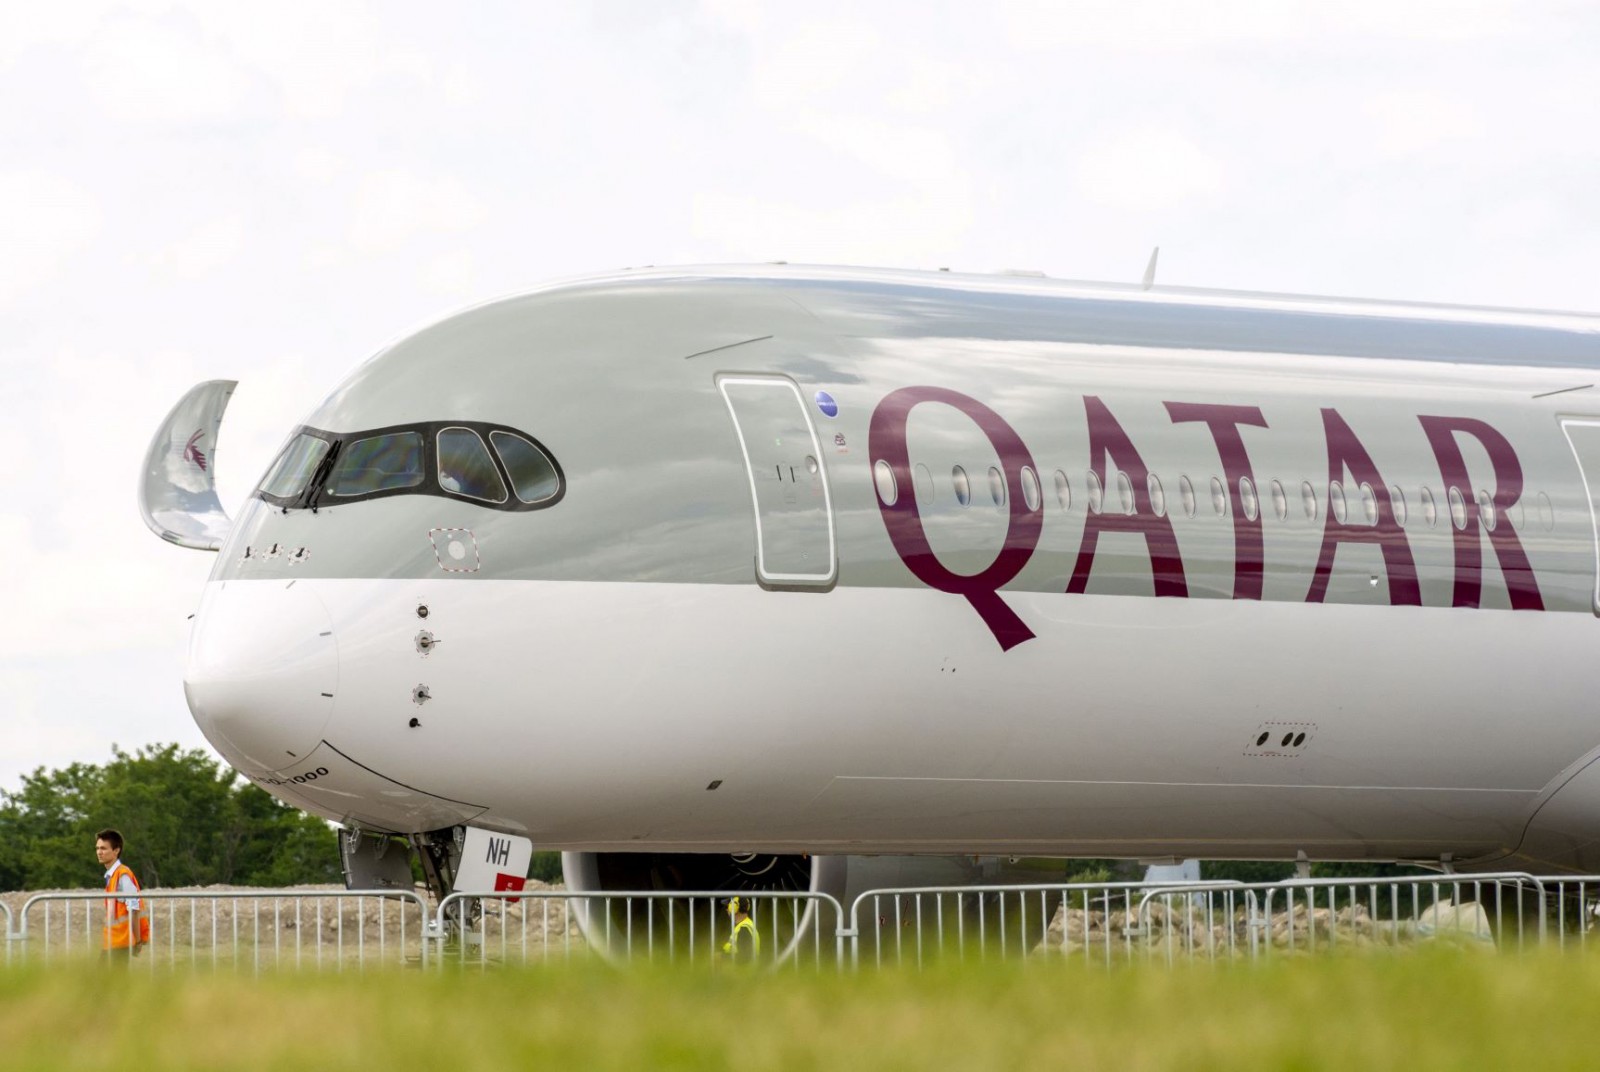 qatar airways